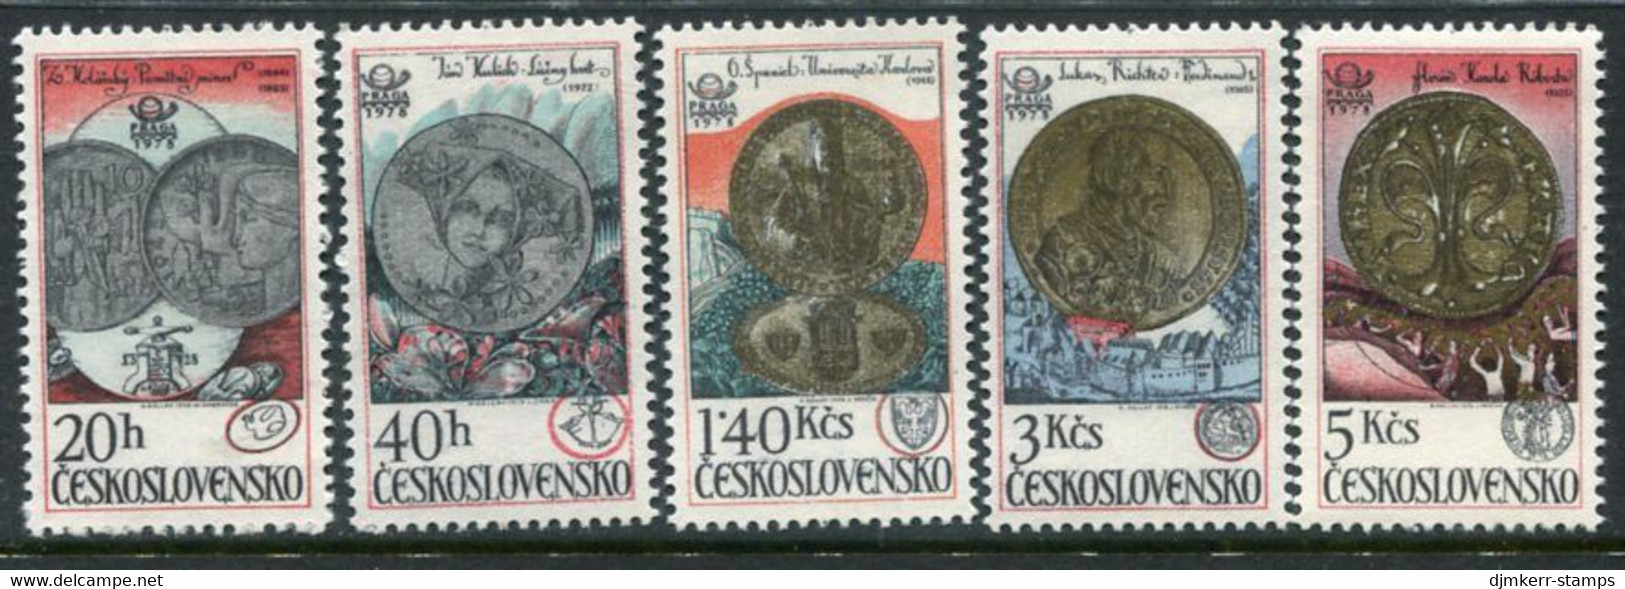 CZECHOSLOVAKIA 1978 Coins From Kremnica Mint MNH / **.   Michel 2427-31 - Neufs